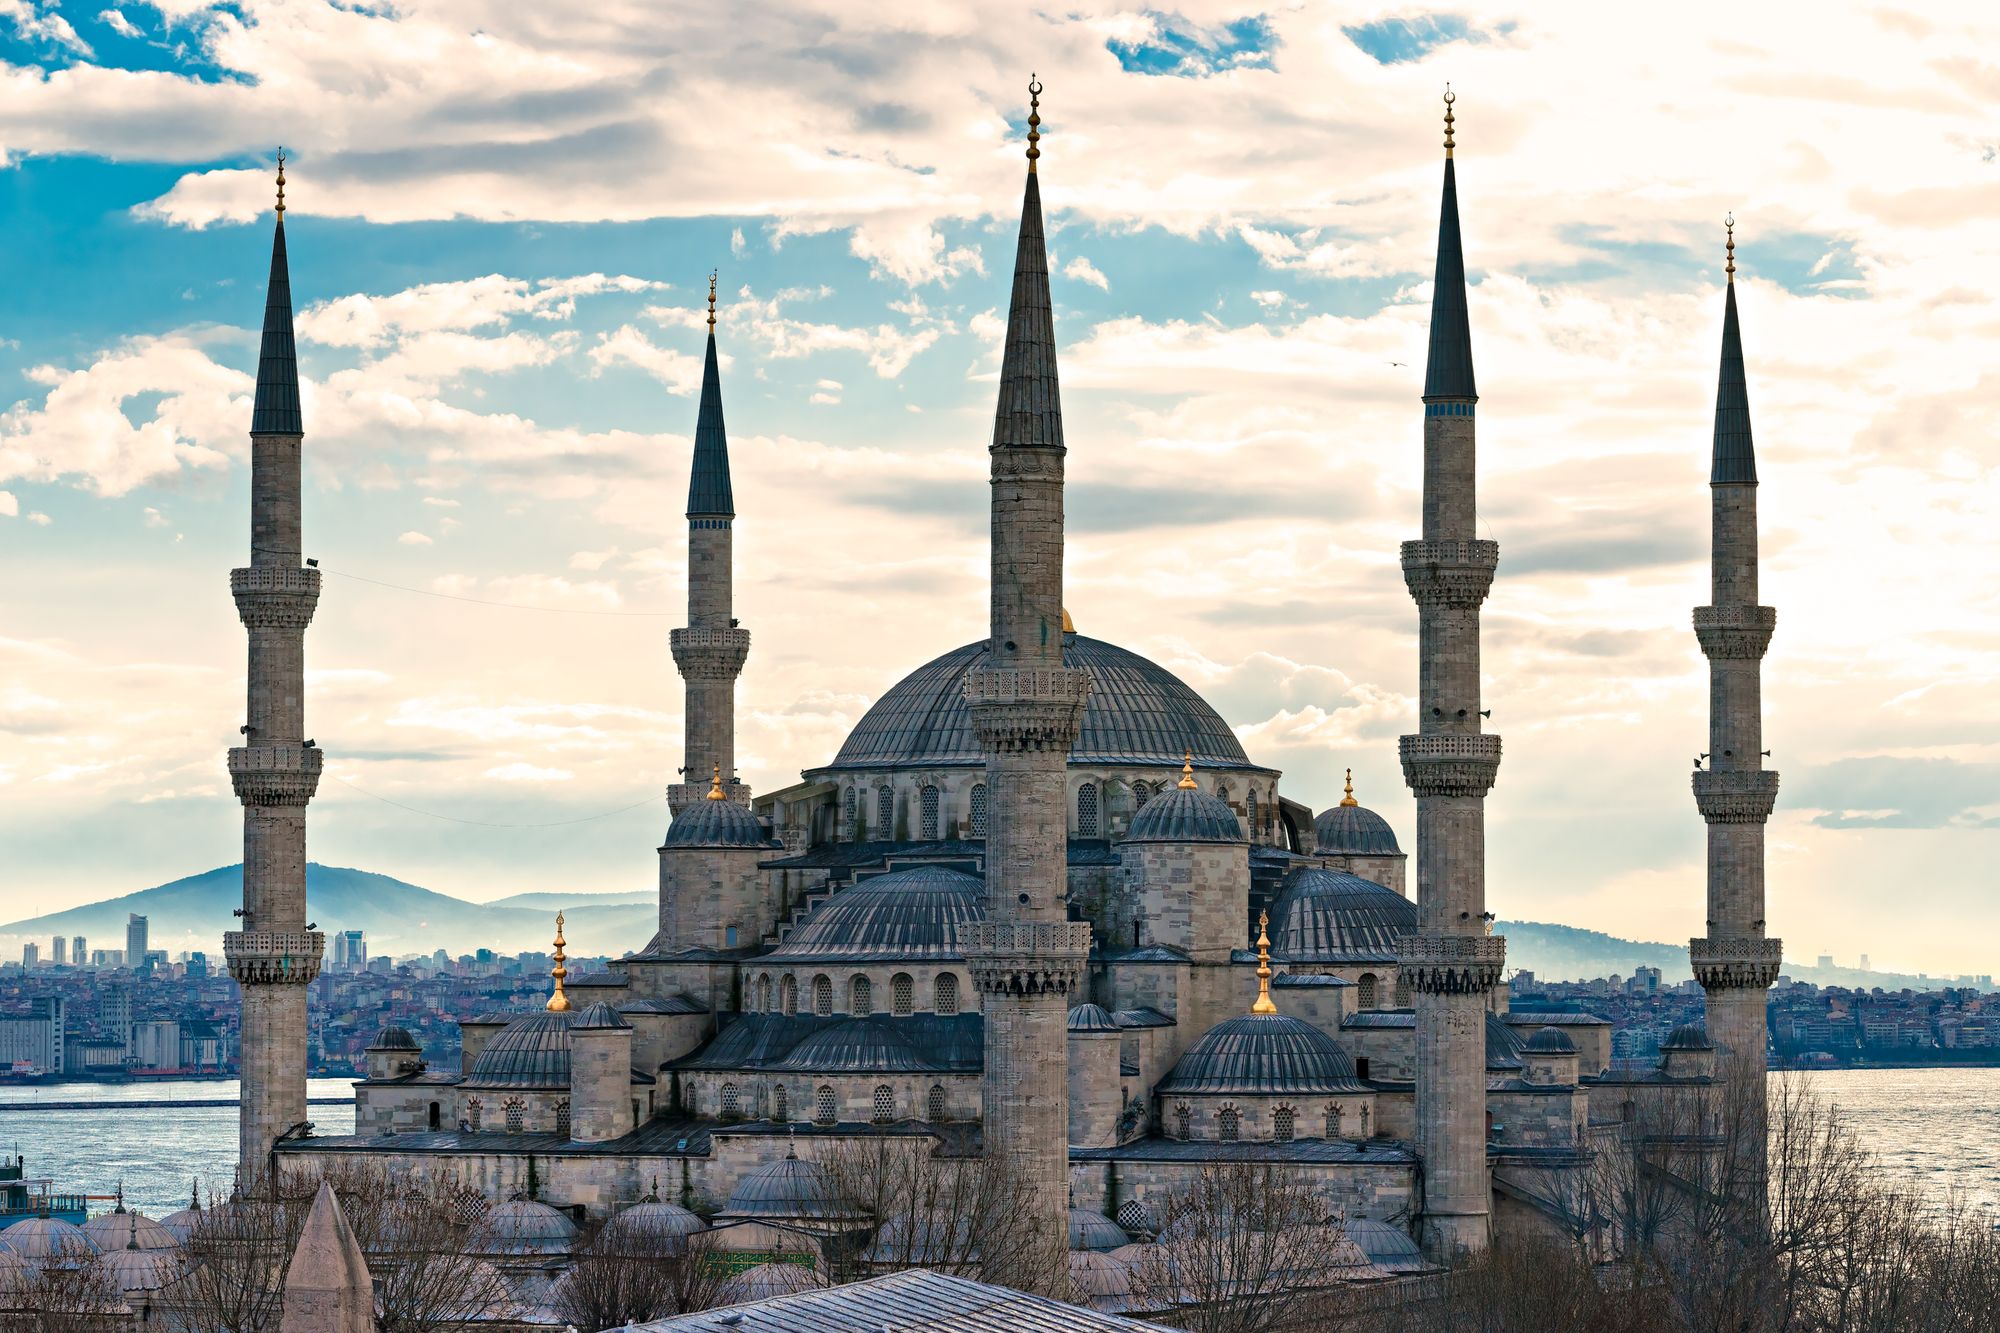 Sultanahmet Mosque in Istanbul